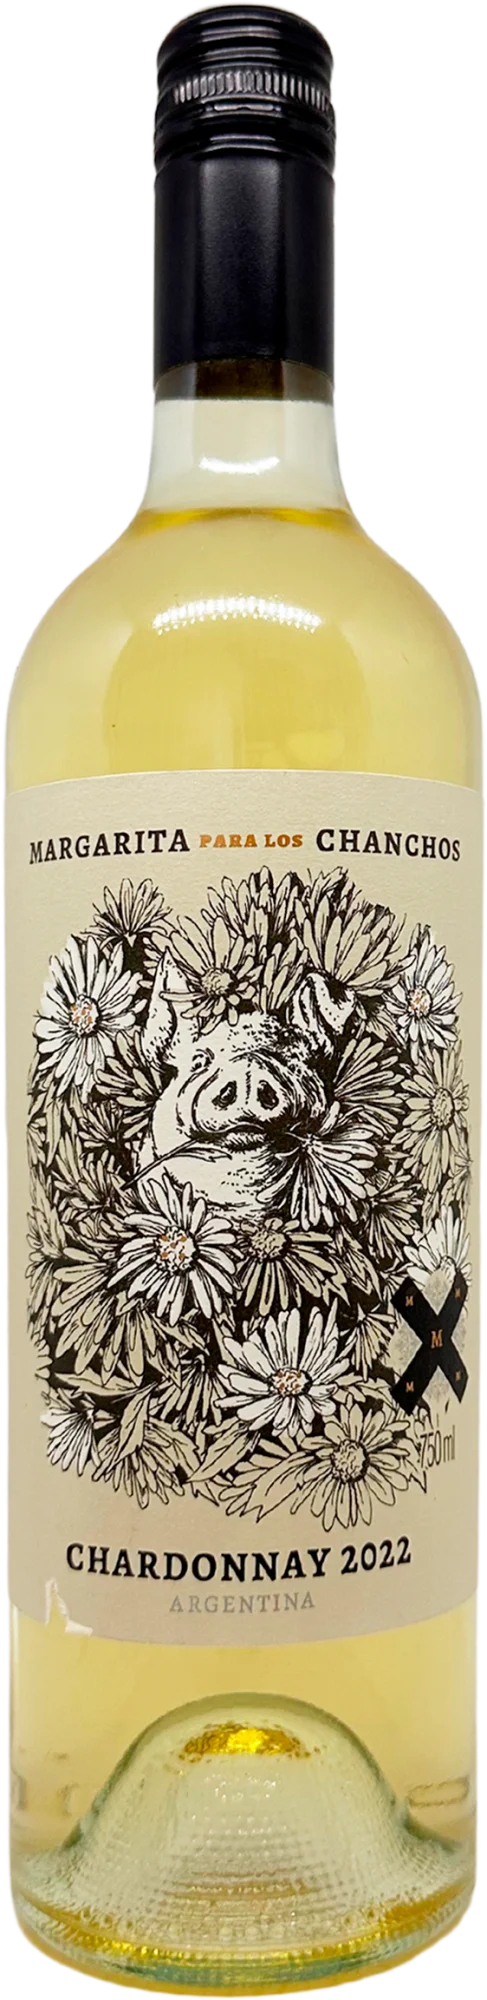 Margarita Para Los Canchos Chardonnay